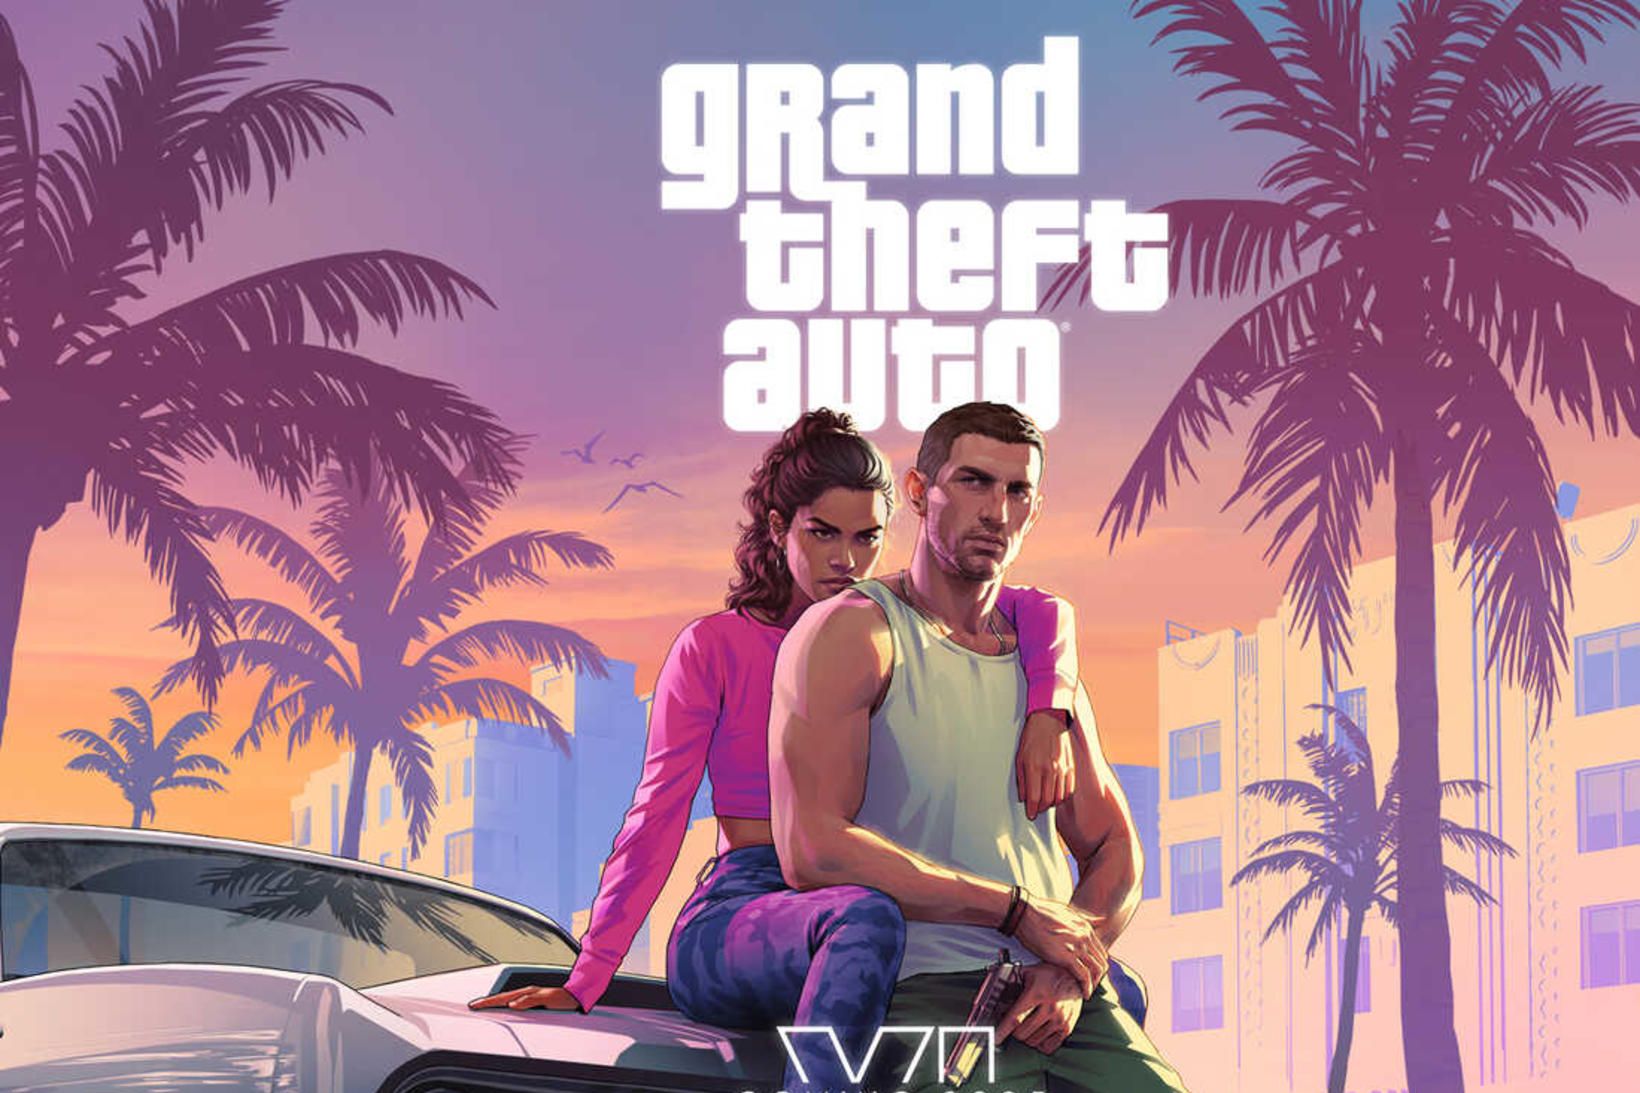 Leikurinn Grand Theft Auto VI kemur á markað árið 2025.